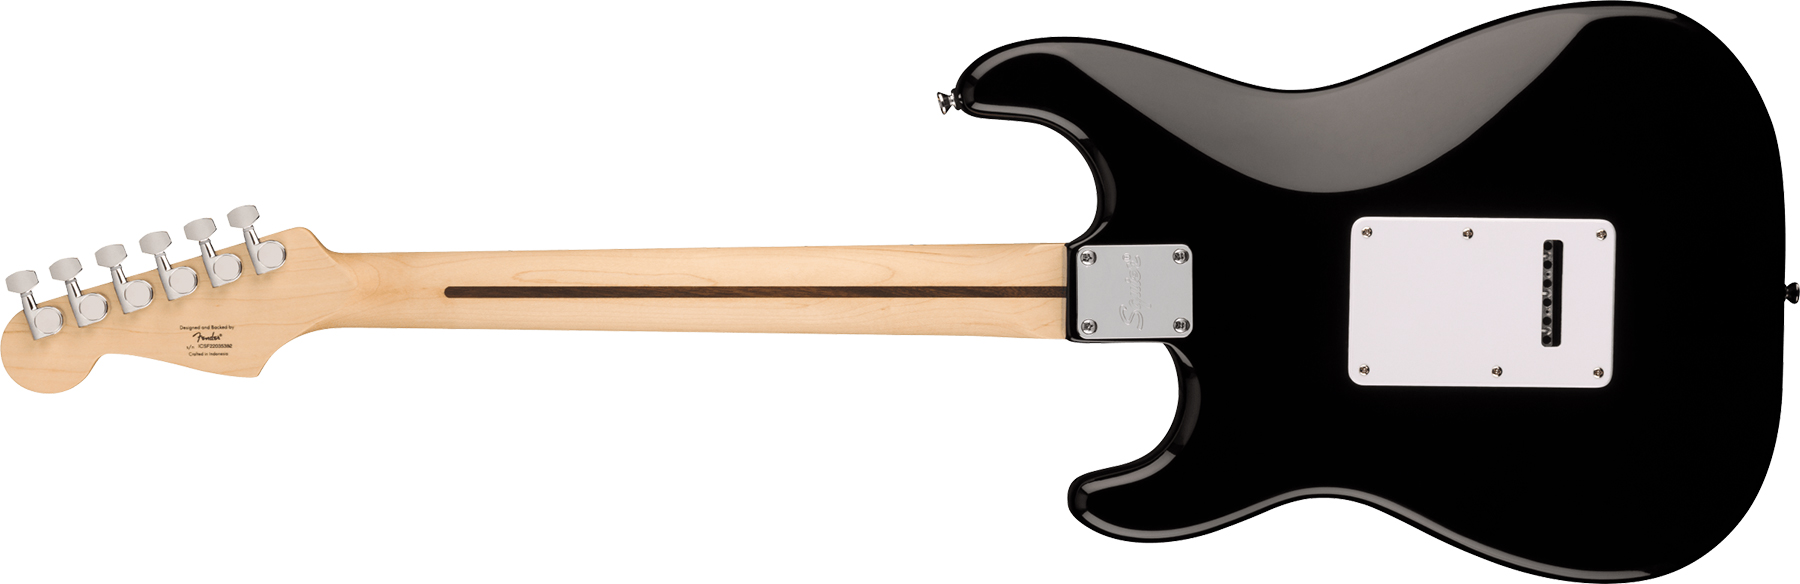 Squier Strat Sonic 3s Trem Mn - Black - Guitarra eléctrica con forma de str. - Variation 1